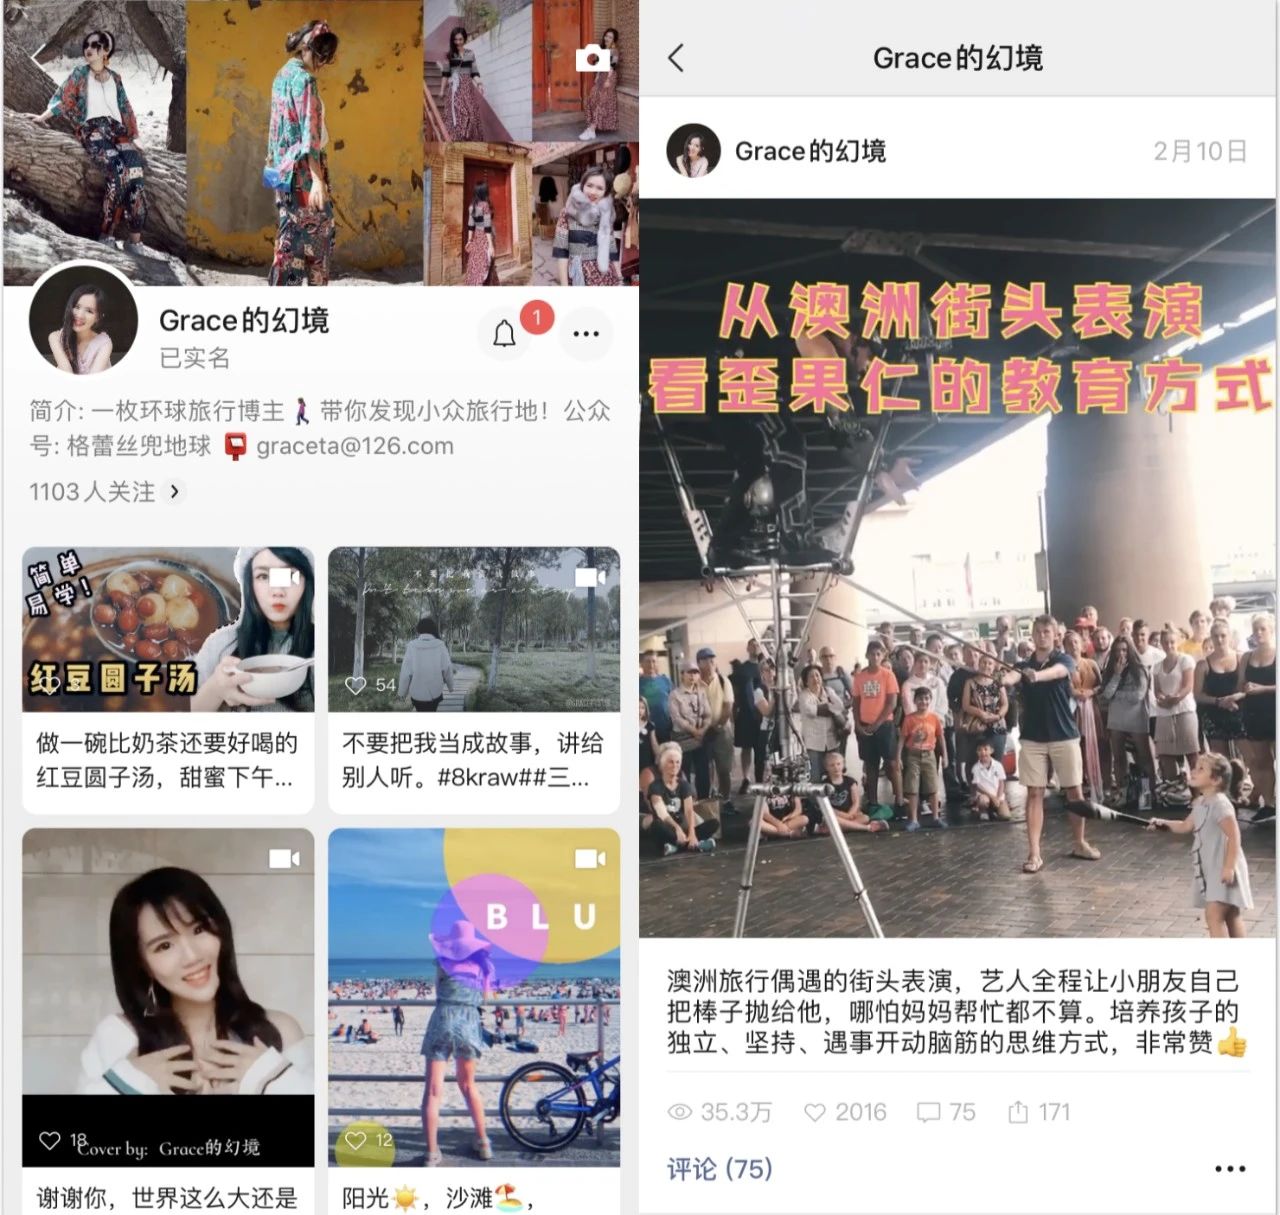 WeChat Channel Marketing